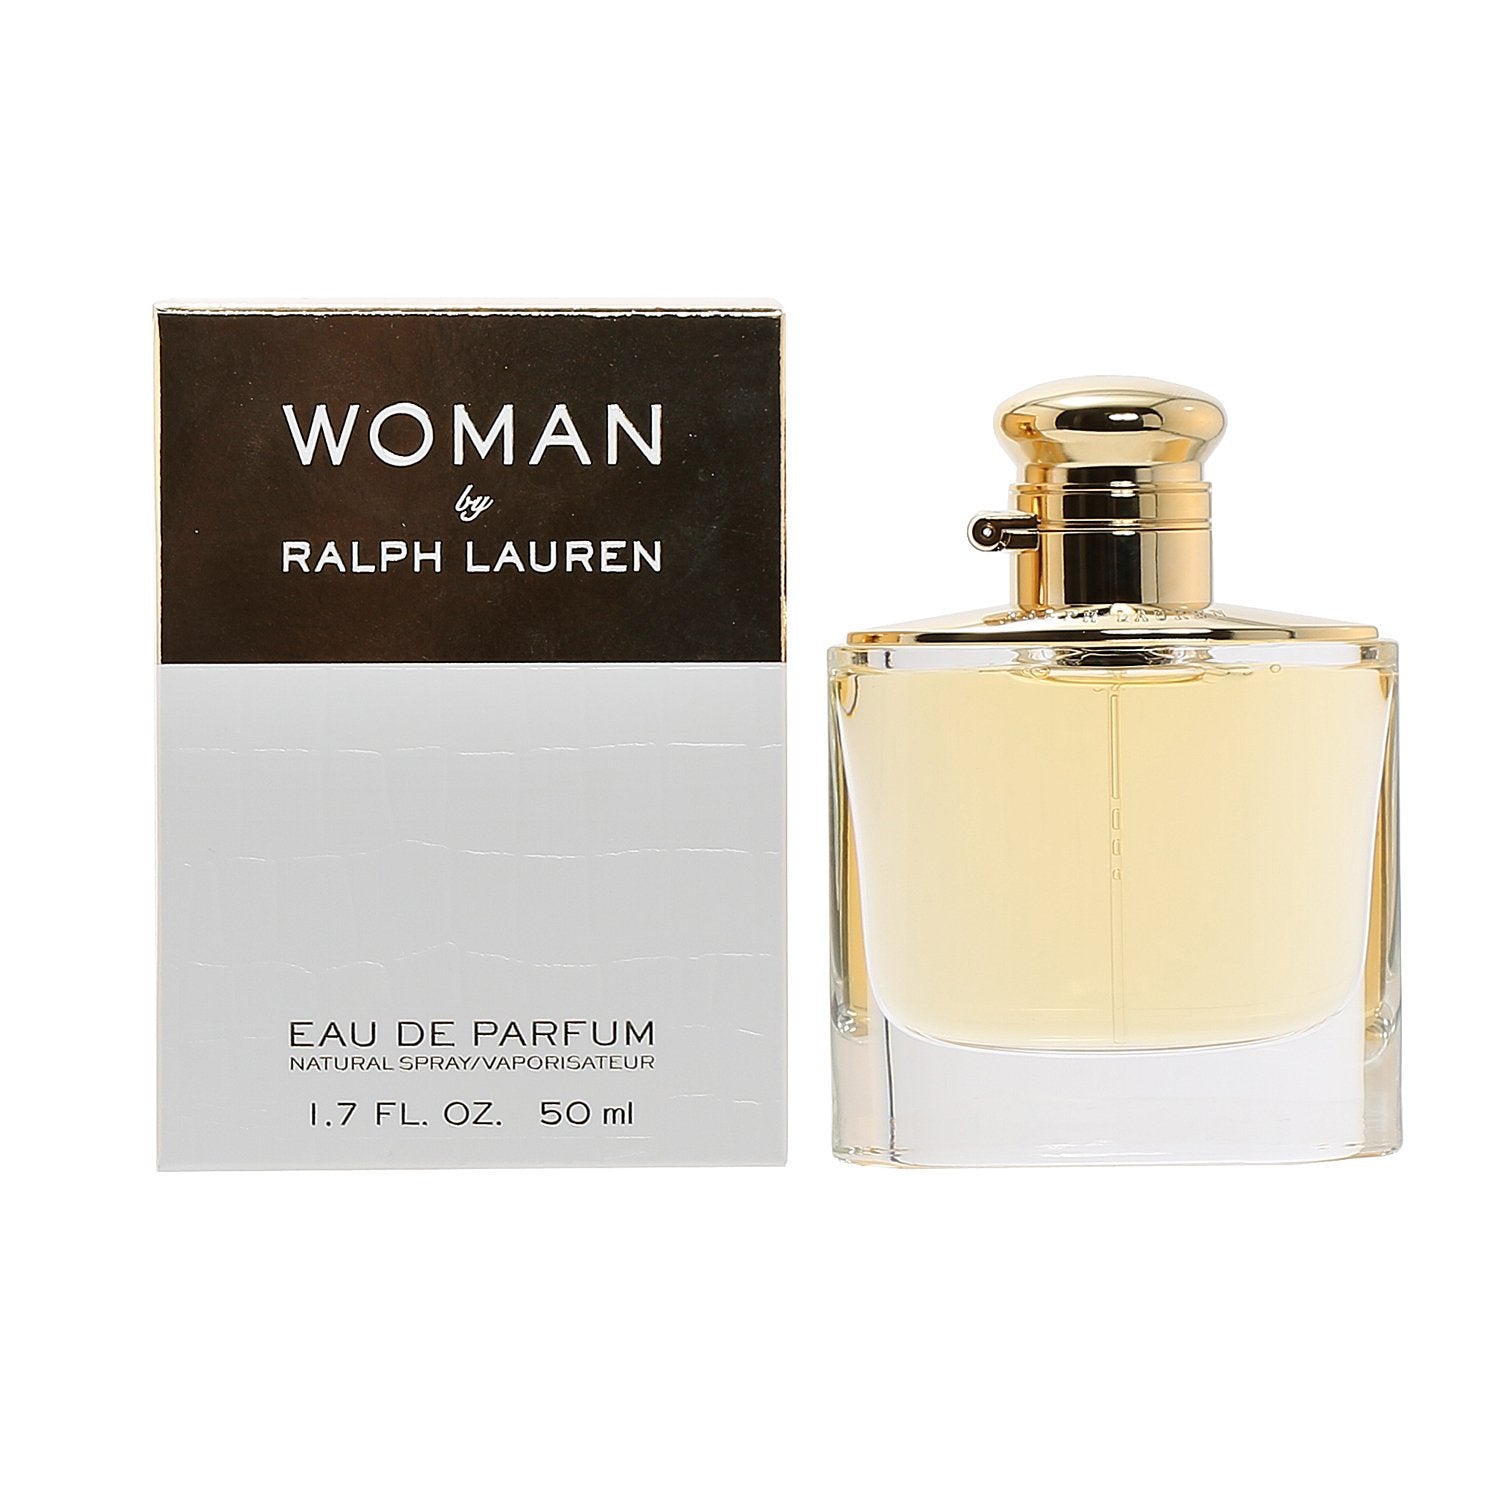 WOMAN BY RALPH LAUREN - EAU DE PARFUM, 1.7 OZ